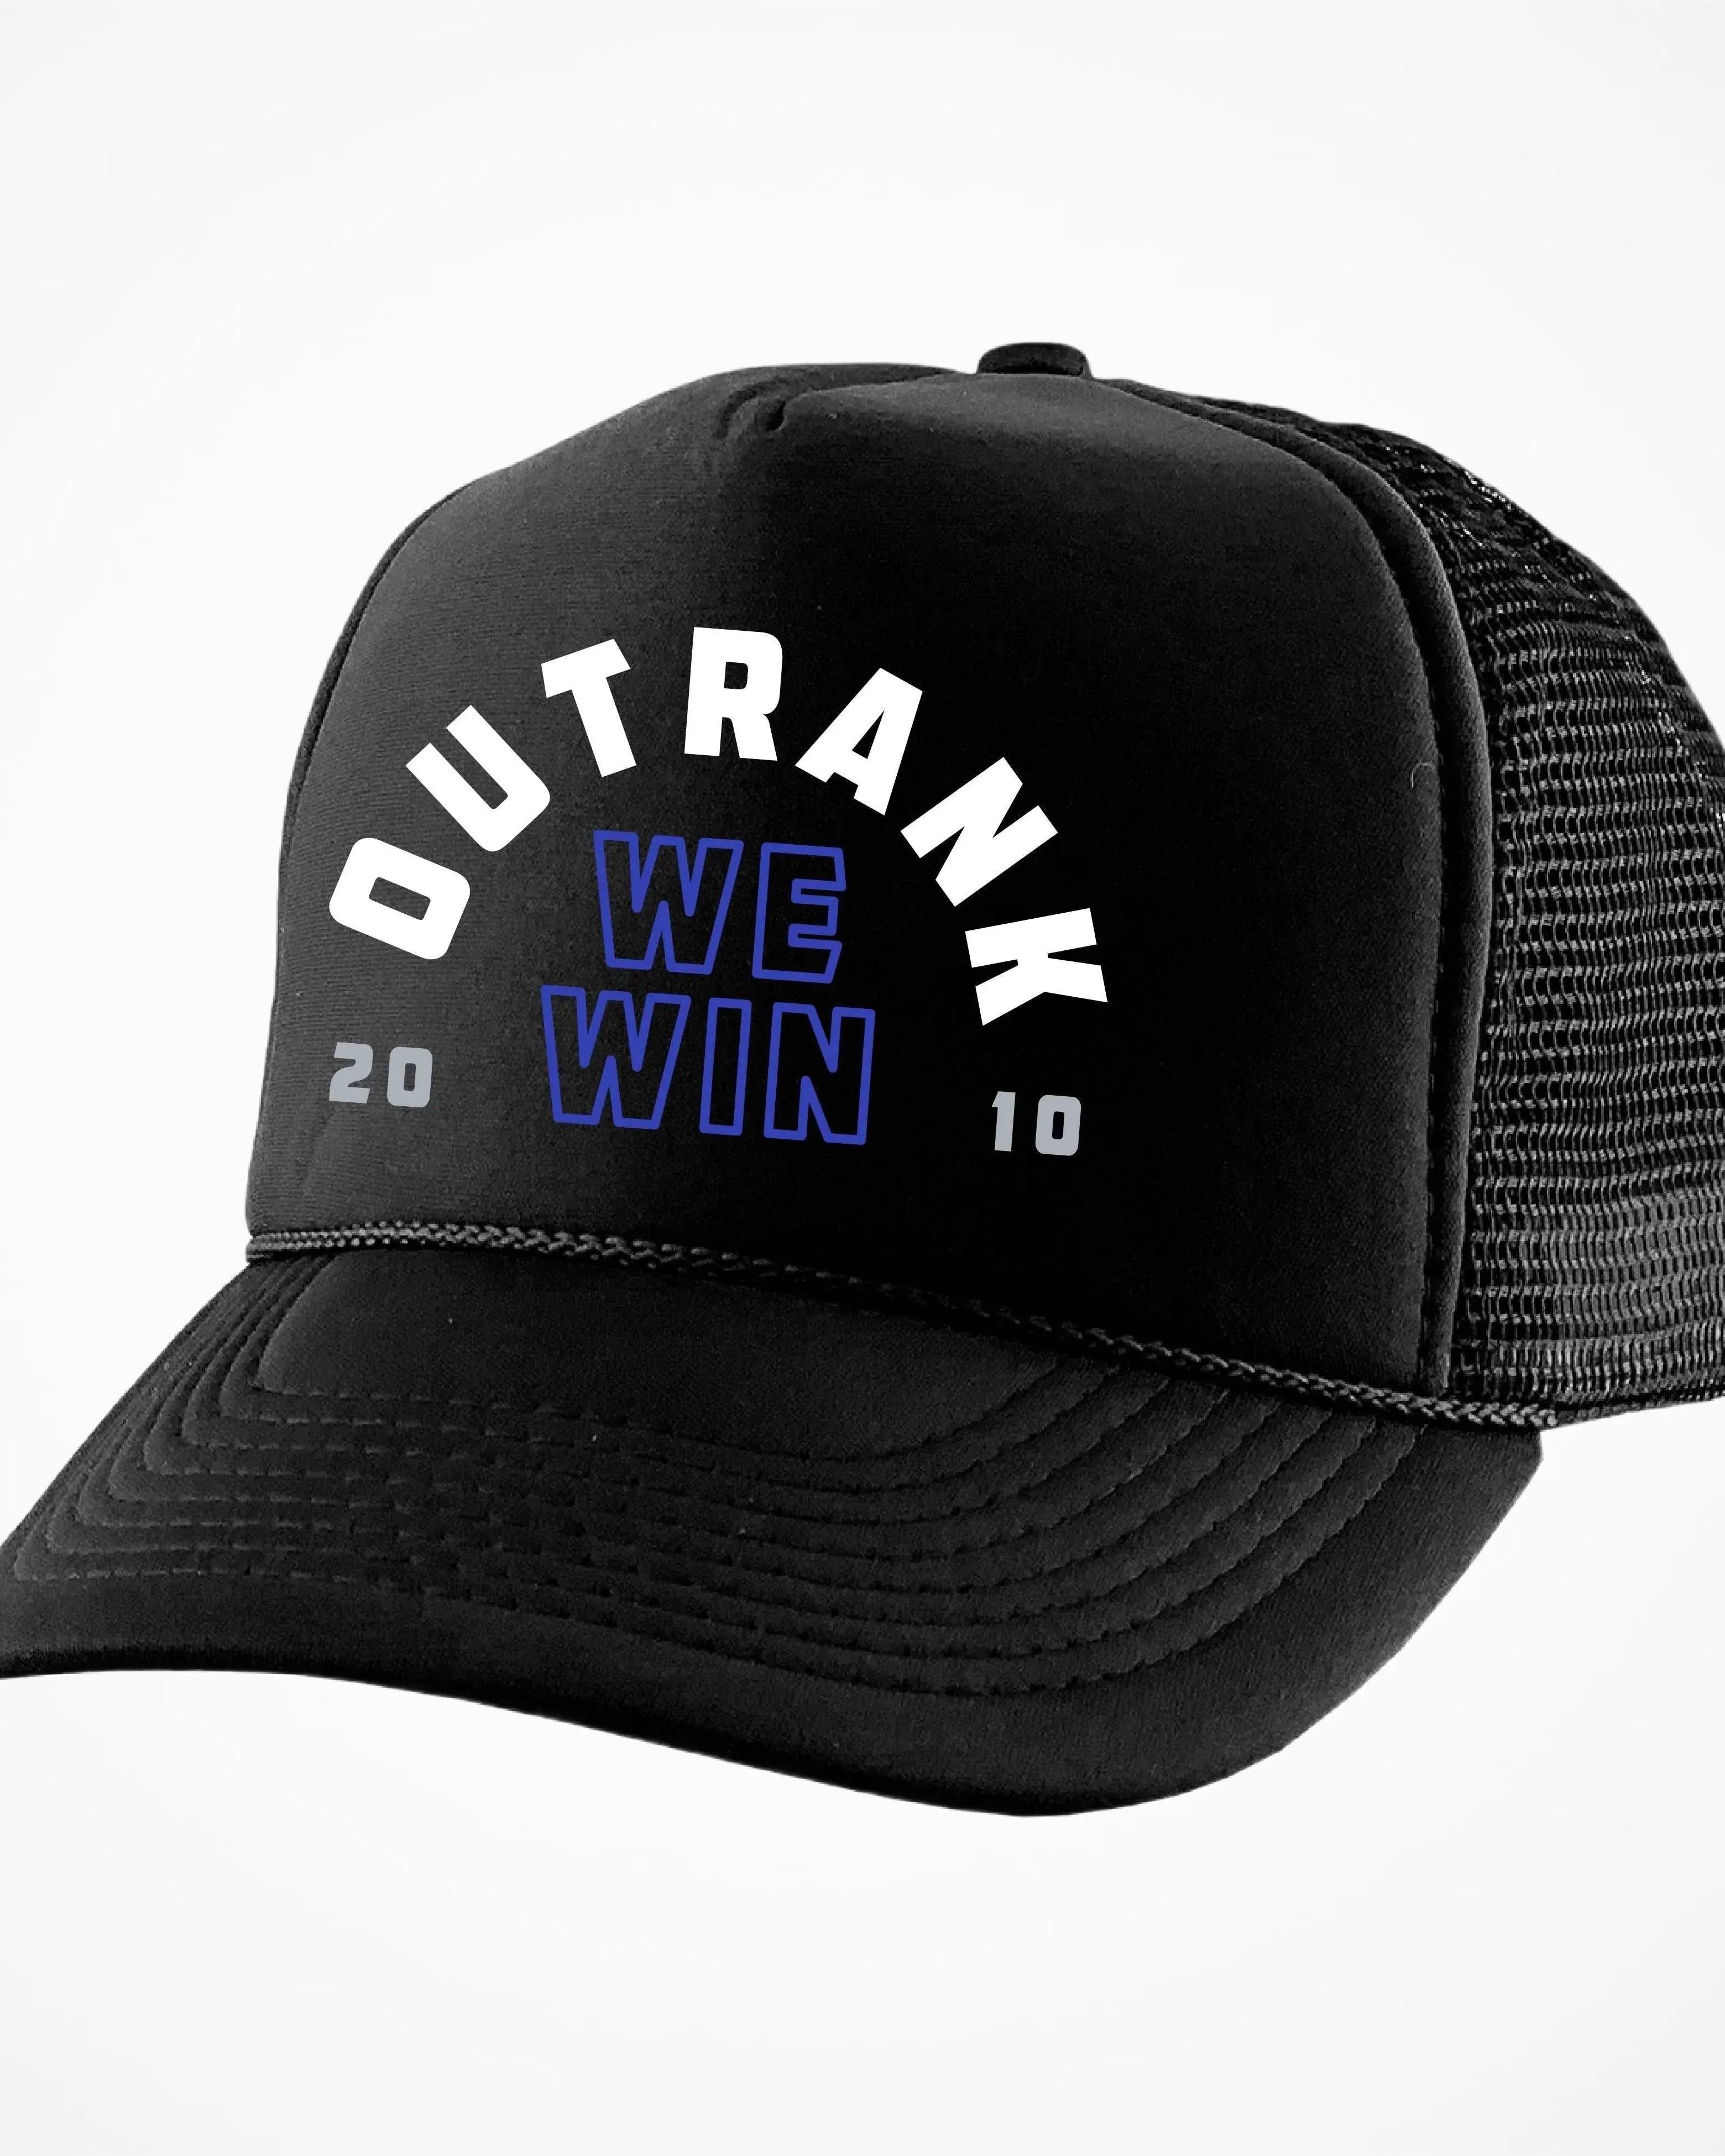 We Win Foam Trucker Hat - Outrank